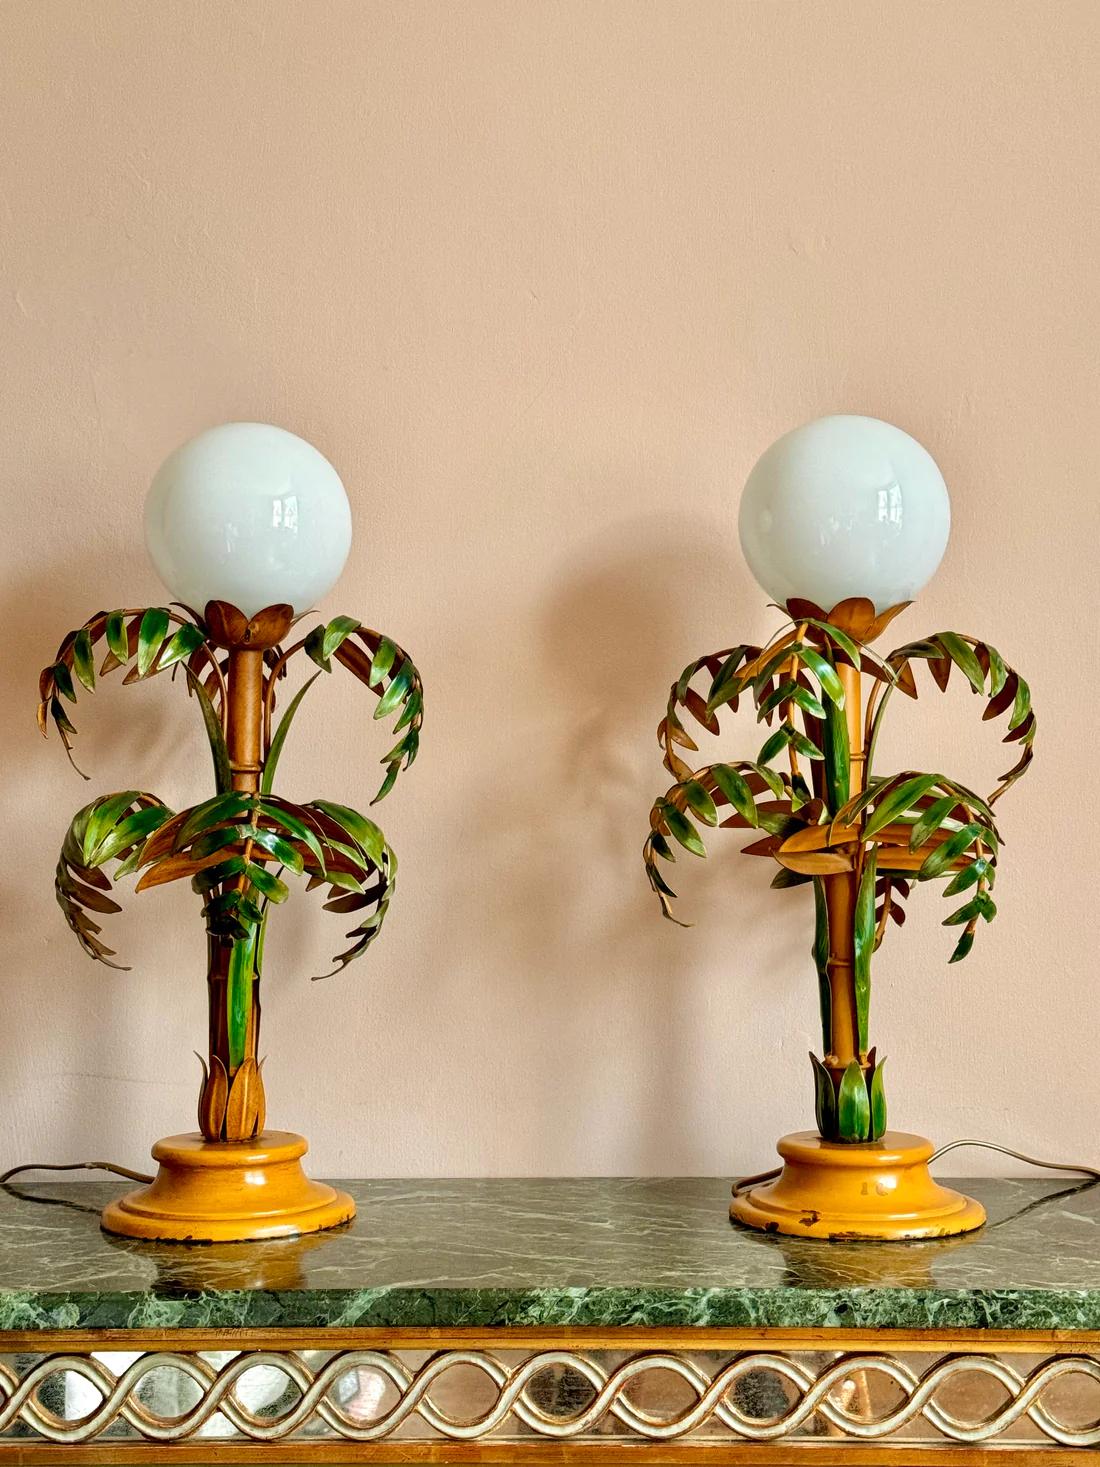 Ein Paar italienische Tole-Bambus-Tischlampen aus den 1940er Jahren.

Wunderschöne und seltene handgemalte Leuchten mit weißen Glaskugeln. In sehr gutem Zustand mit leichten und attraktiven Gebrauchsspuren. Beide Lampen wurden neu verkabelt, mit